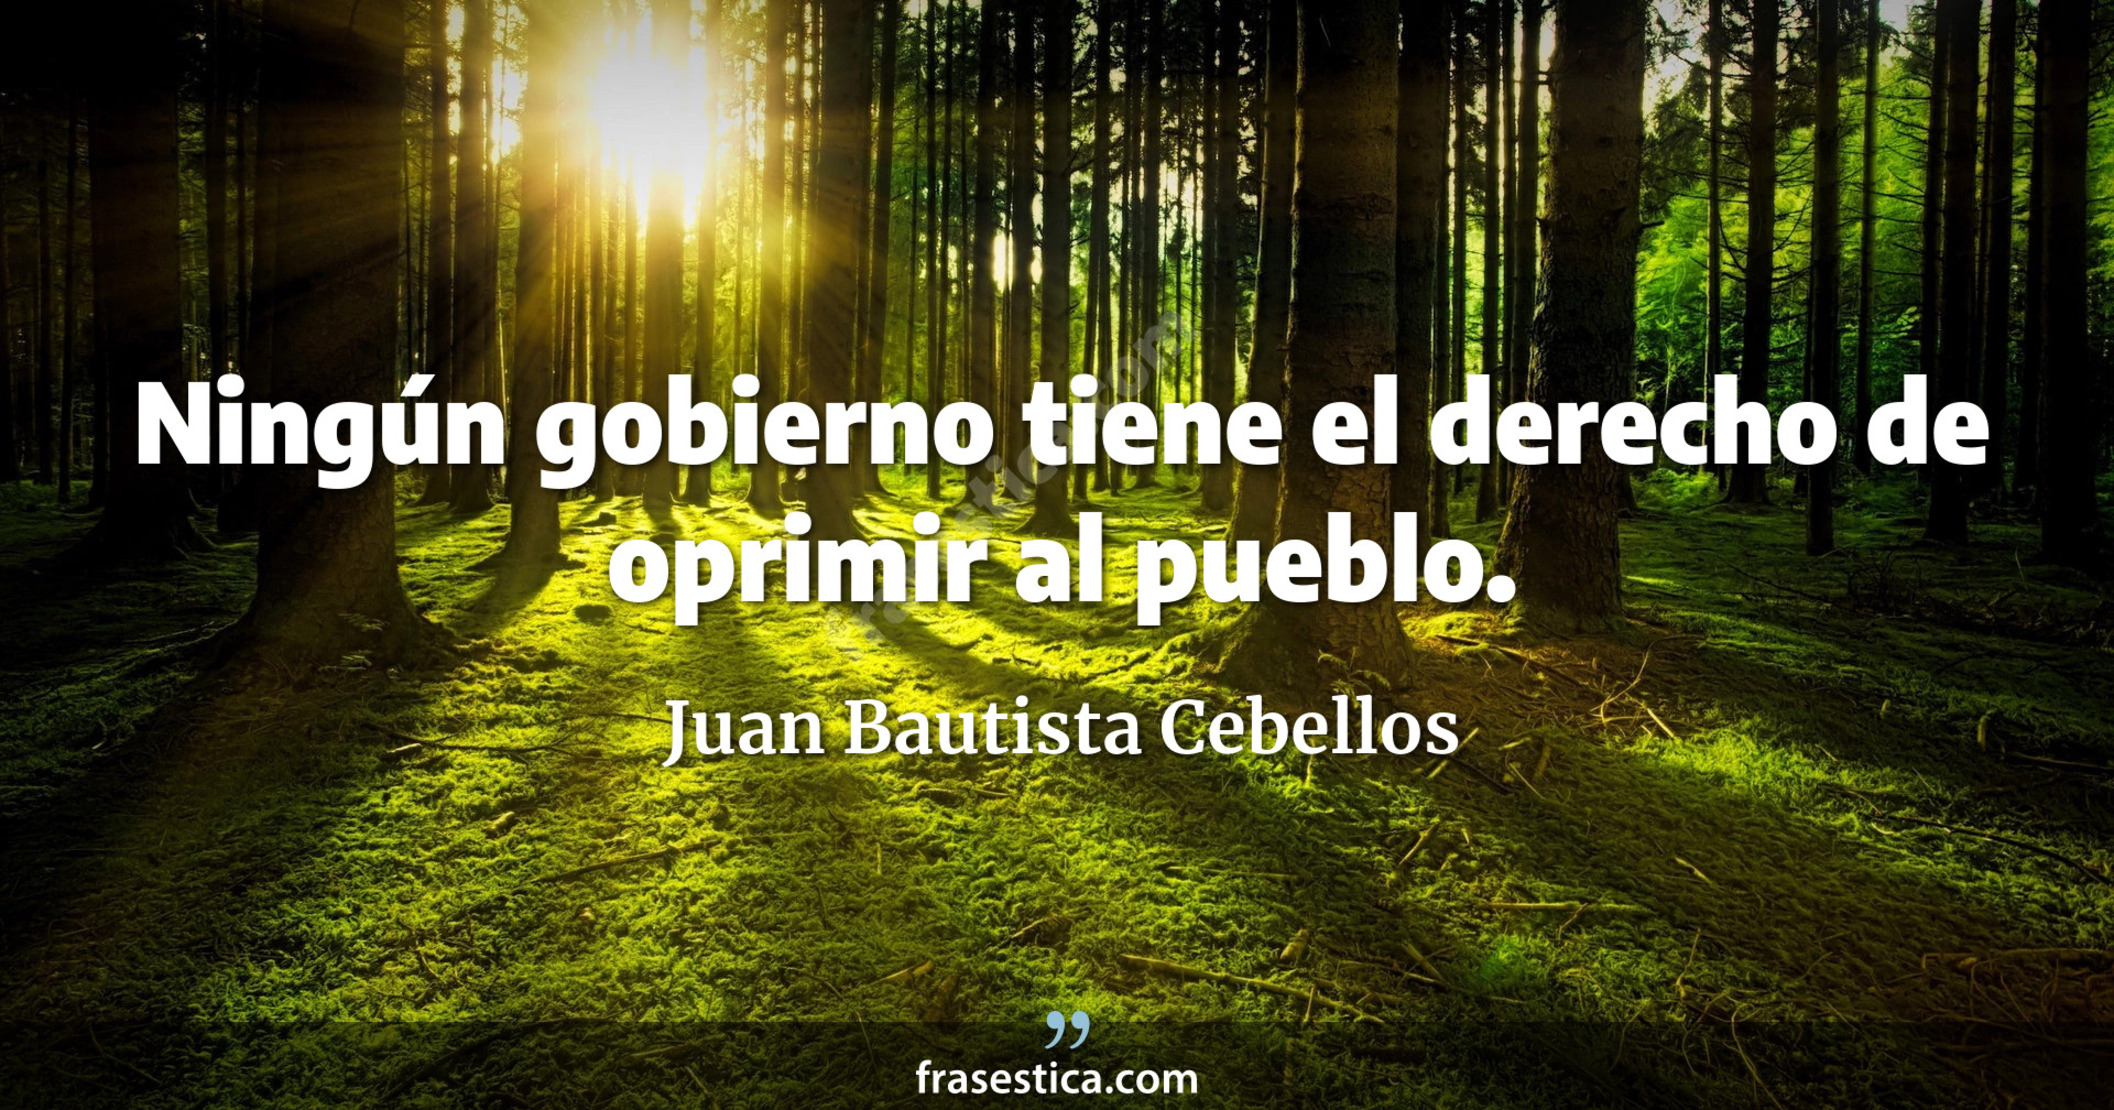 Ningún gobierno tiene el derecho de oprimir al pueblo. - Juan Bautista Cebellos